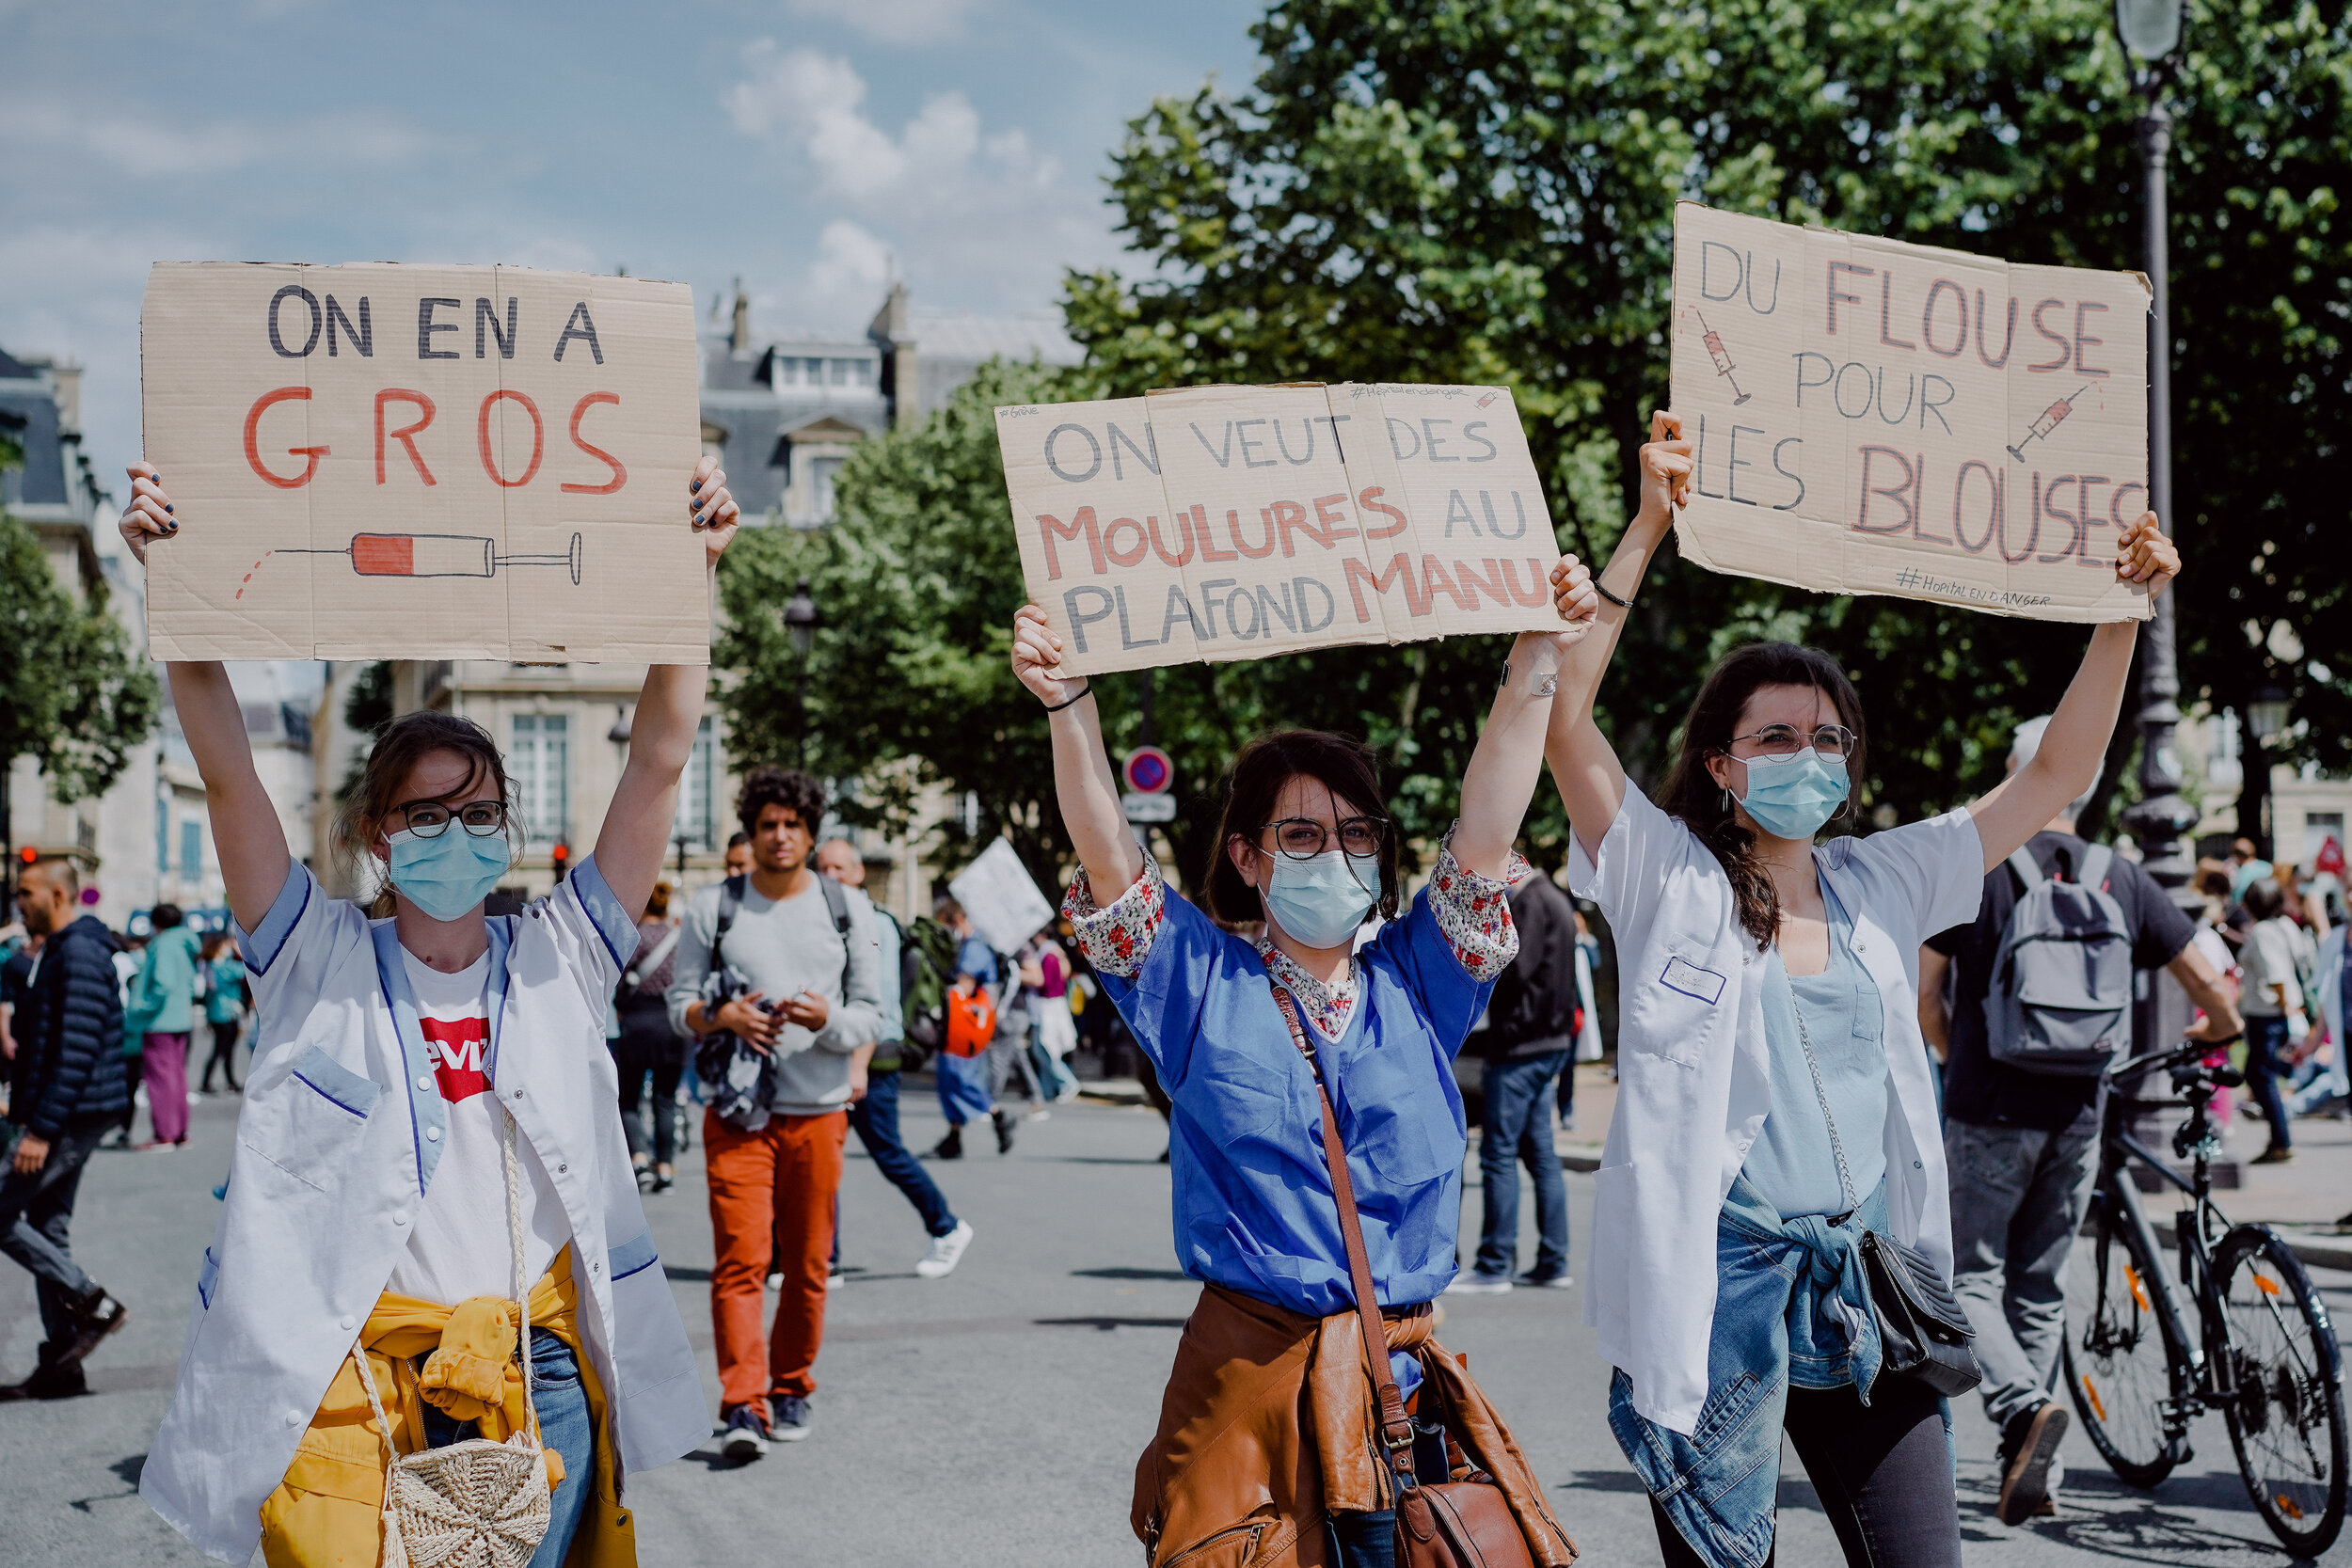  Manifestation du personnel soignant - Paris - 16 juin 2020 